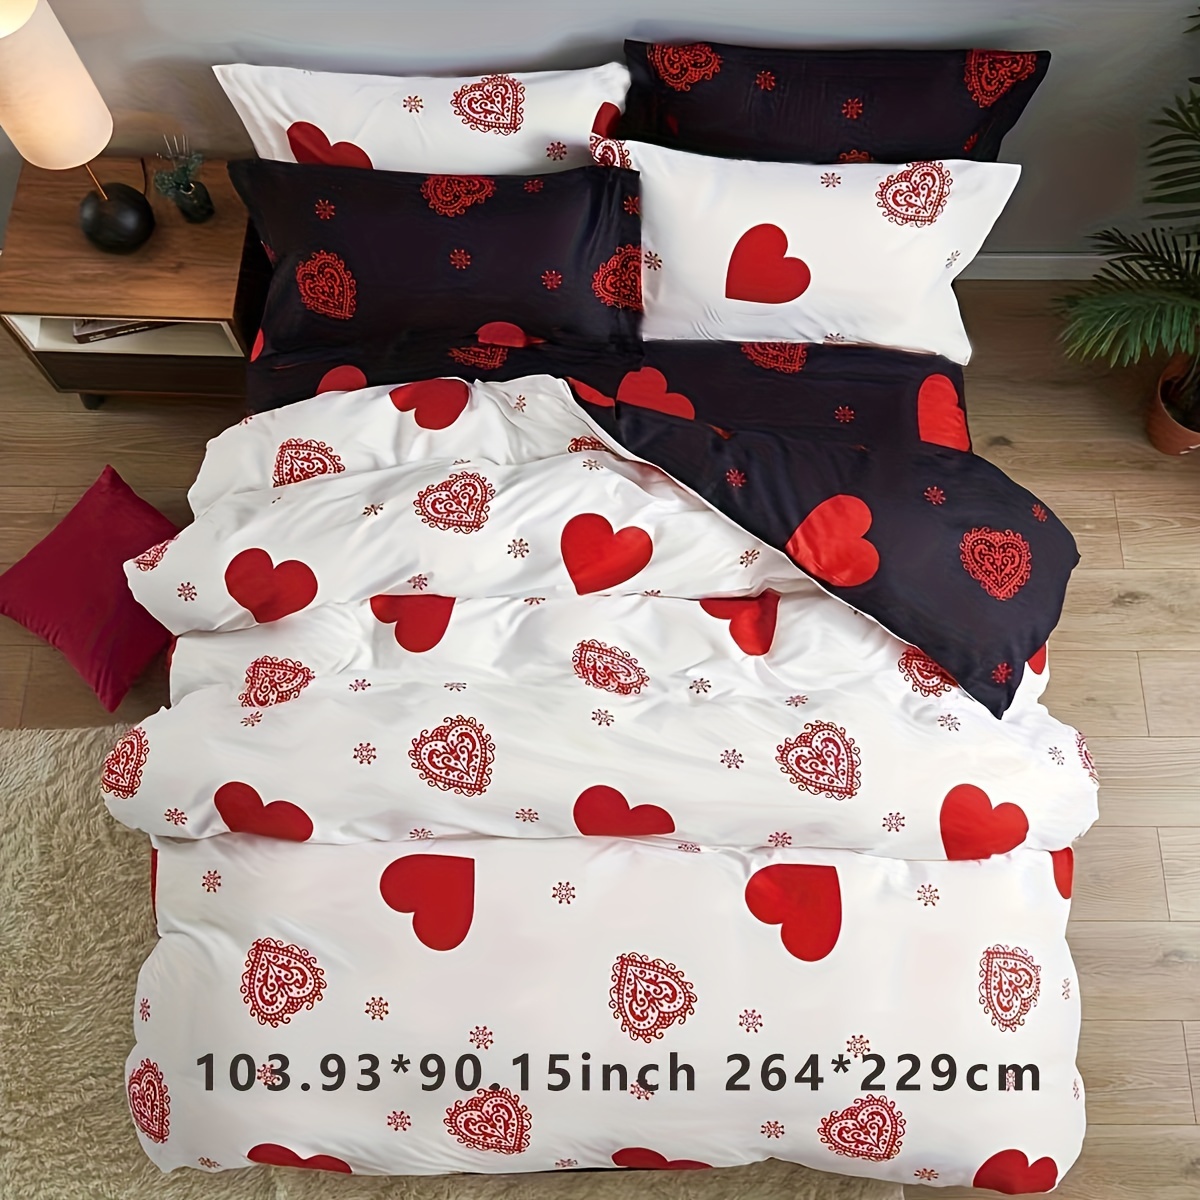 Romantic Comforters